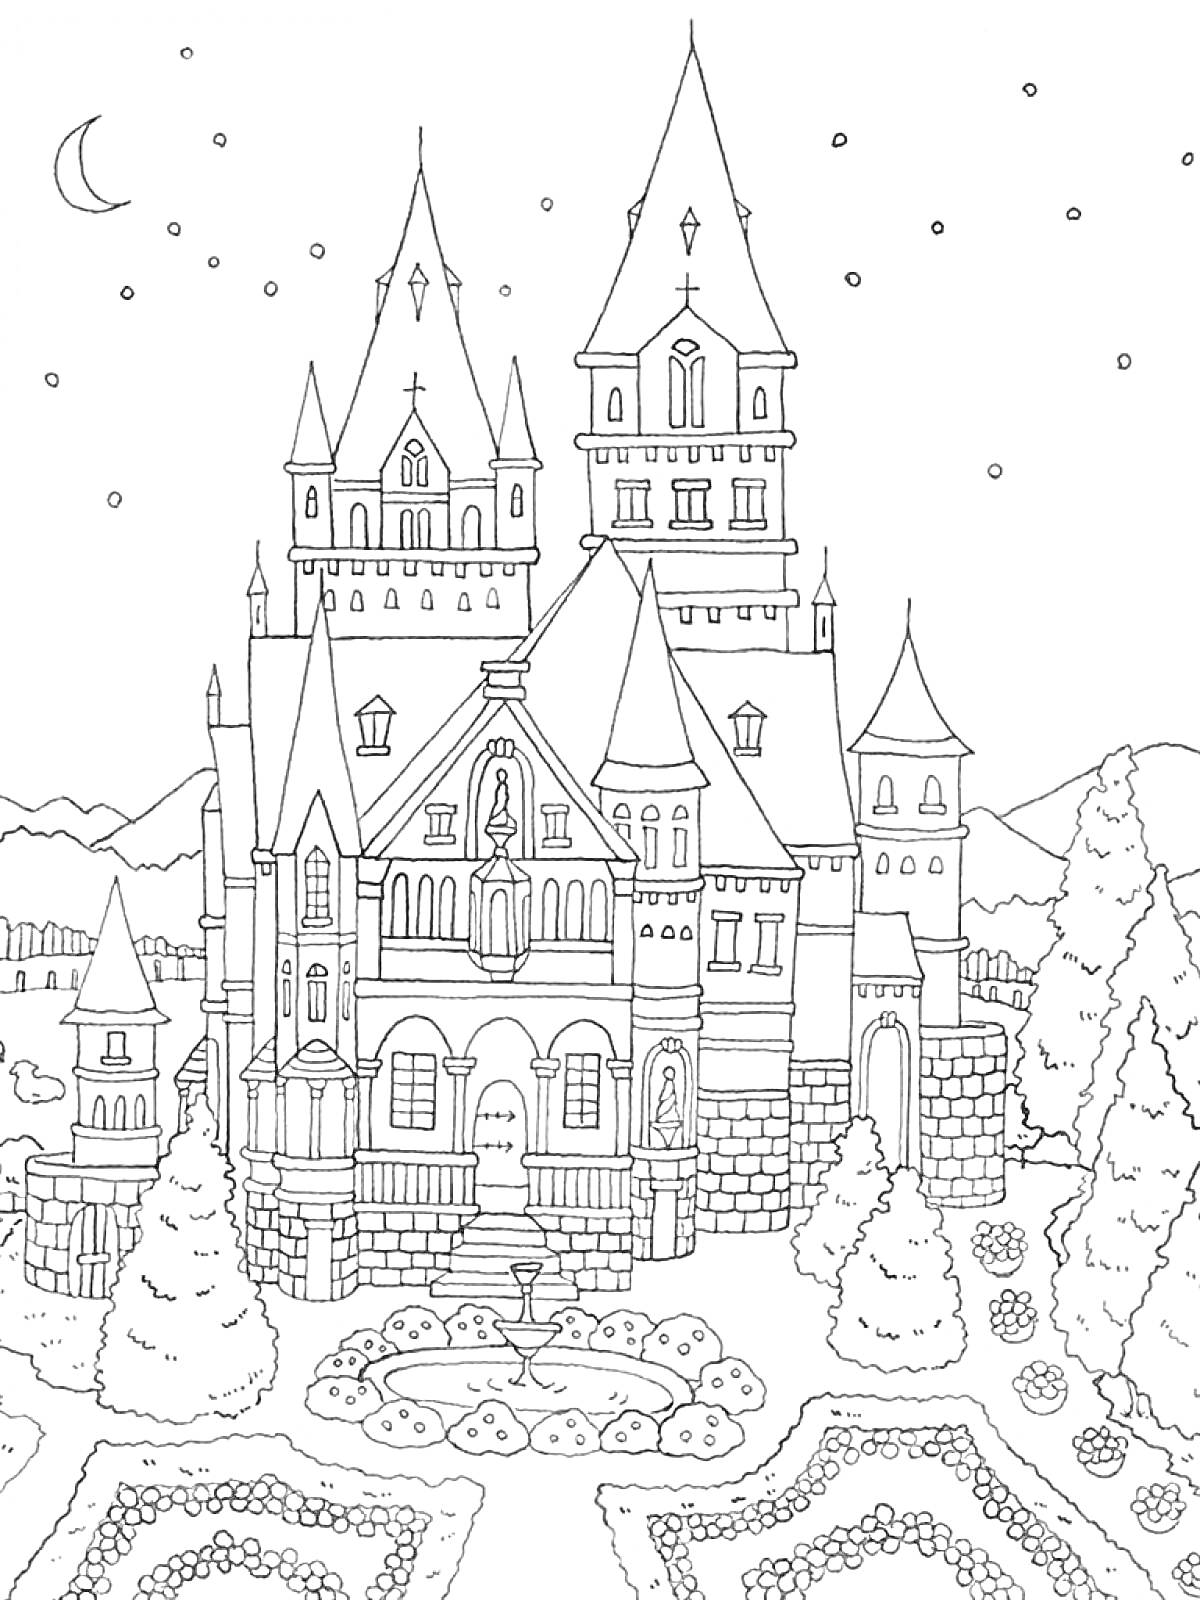 Раскраска Ночной замок с башнями, деревьями, клумбами, звездами и луной